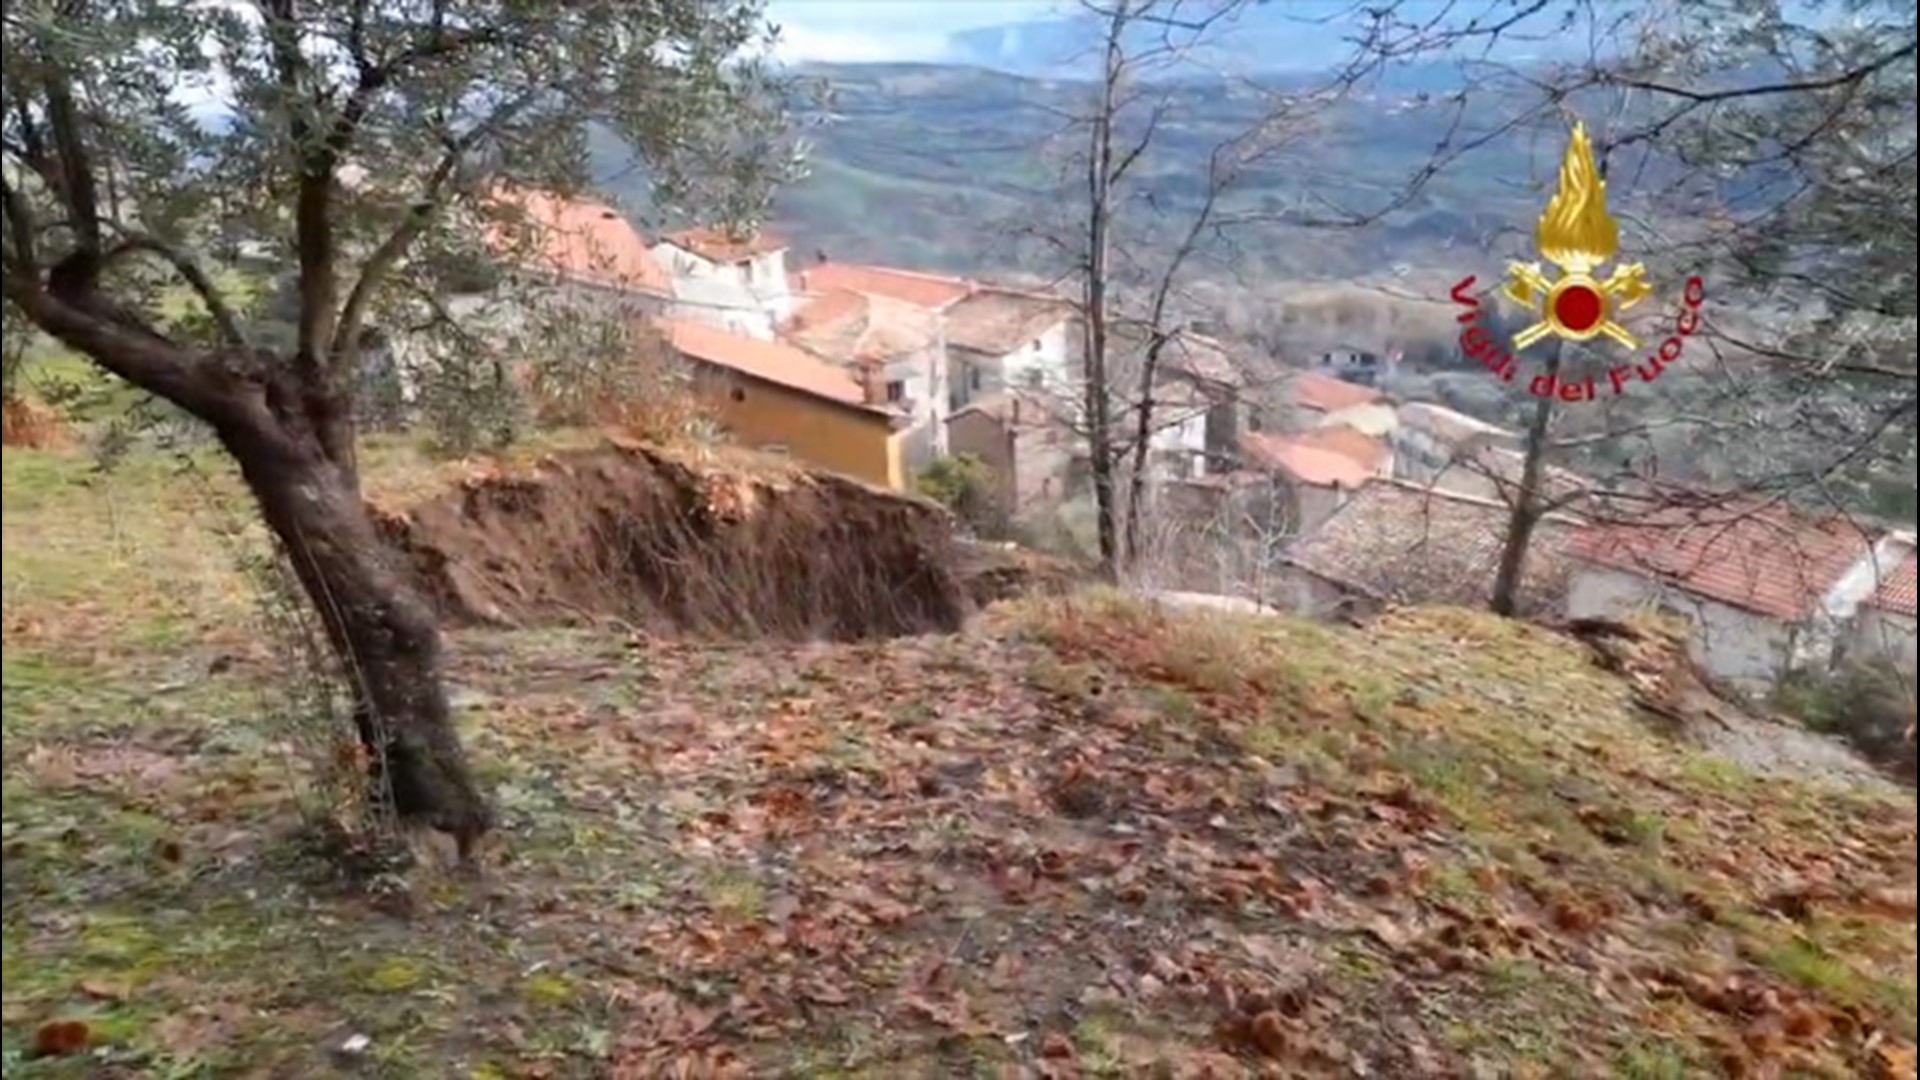 40 people evacuated as mudslide tears through Italian town